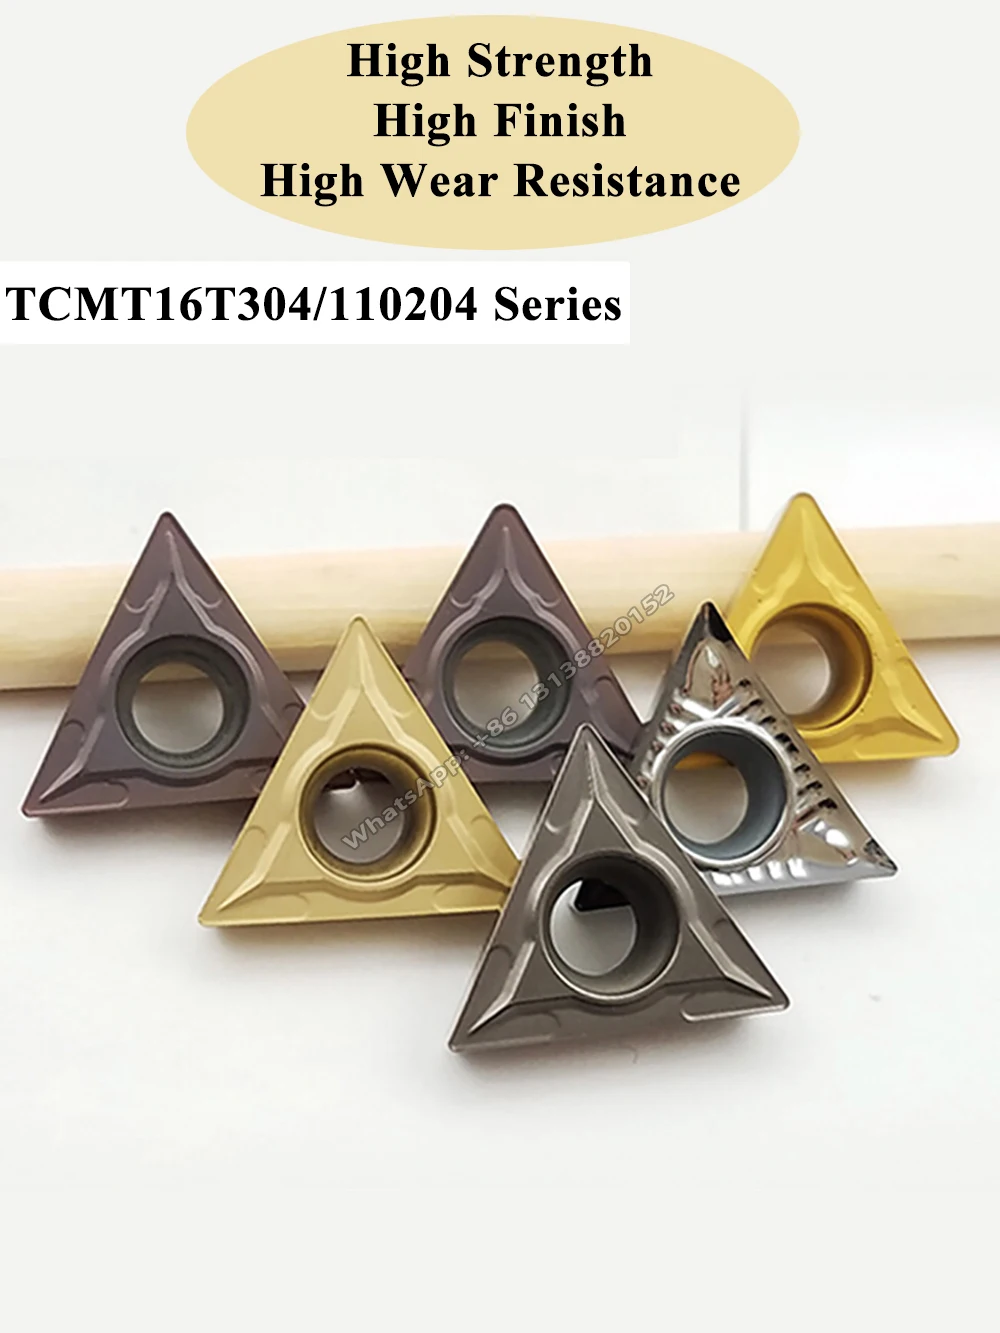 10 buc TCMT 090204 PM4225 insertii carbură pot fi indexate interne unelte de strunjit CNC lama Ceramica Interior plictisitor introduce . ' - ' . 0